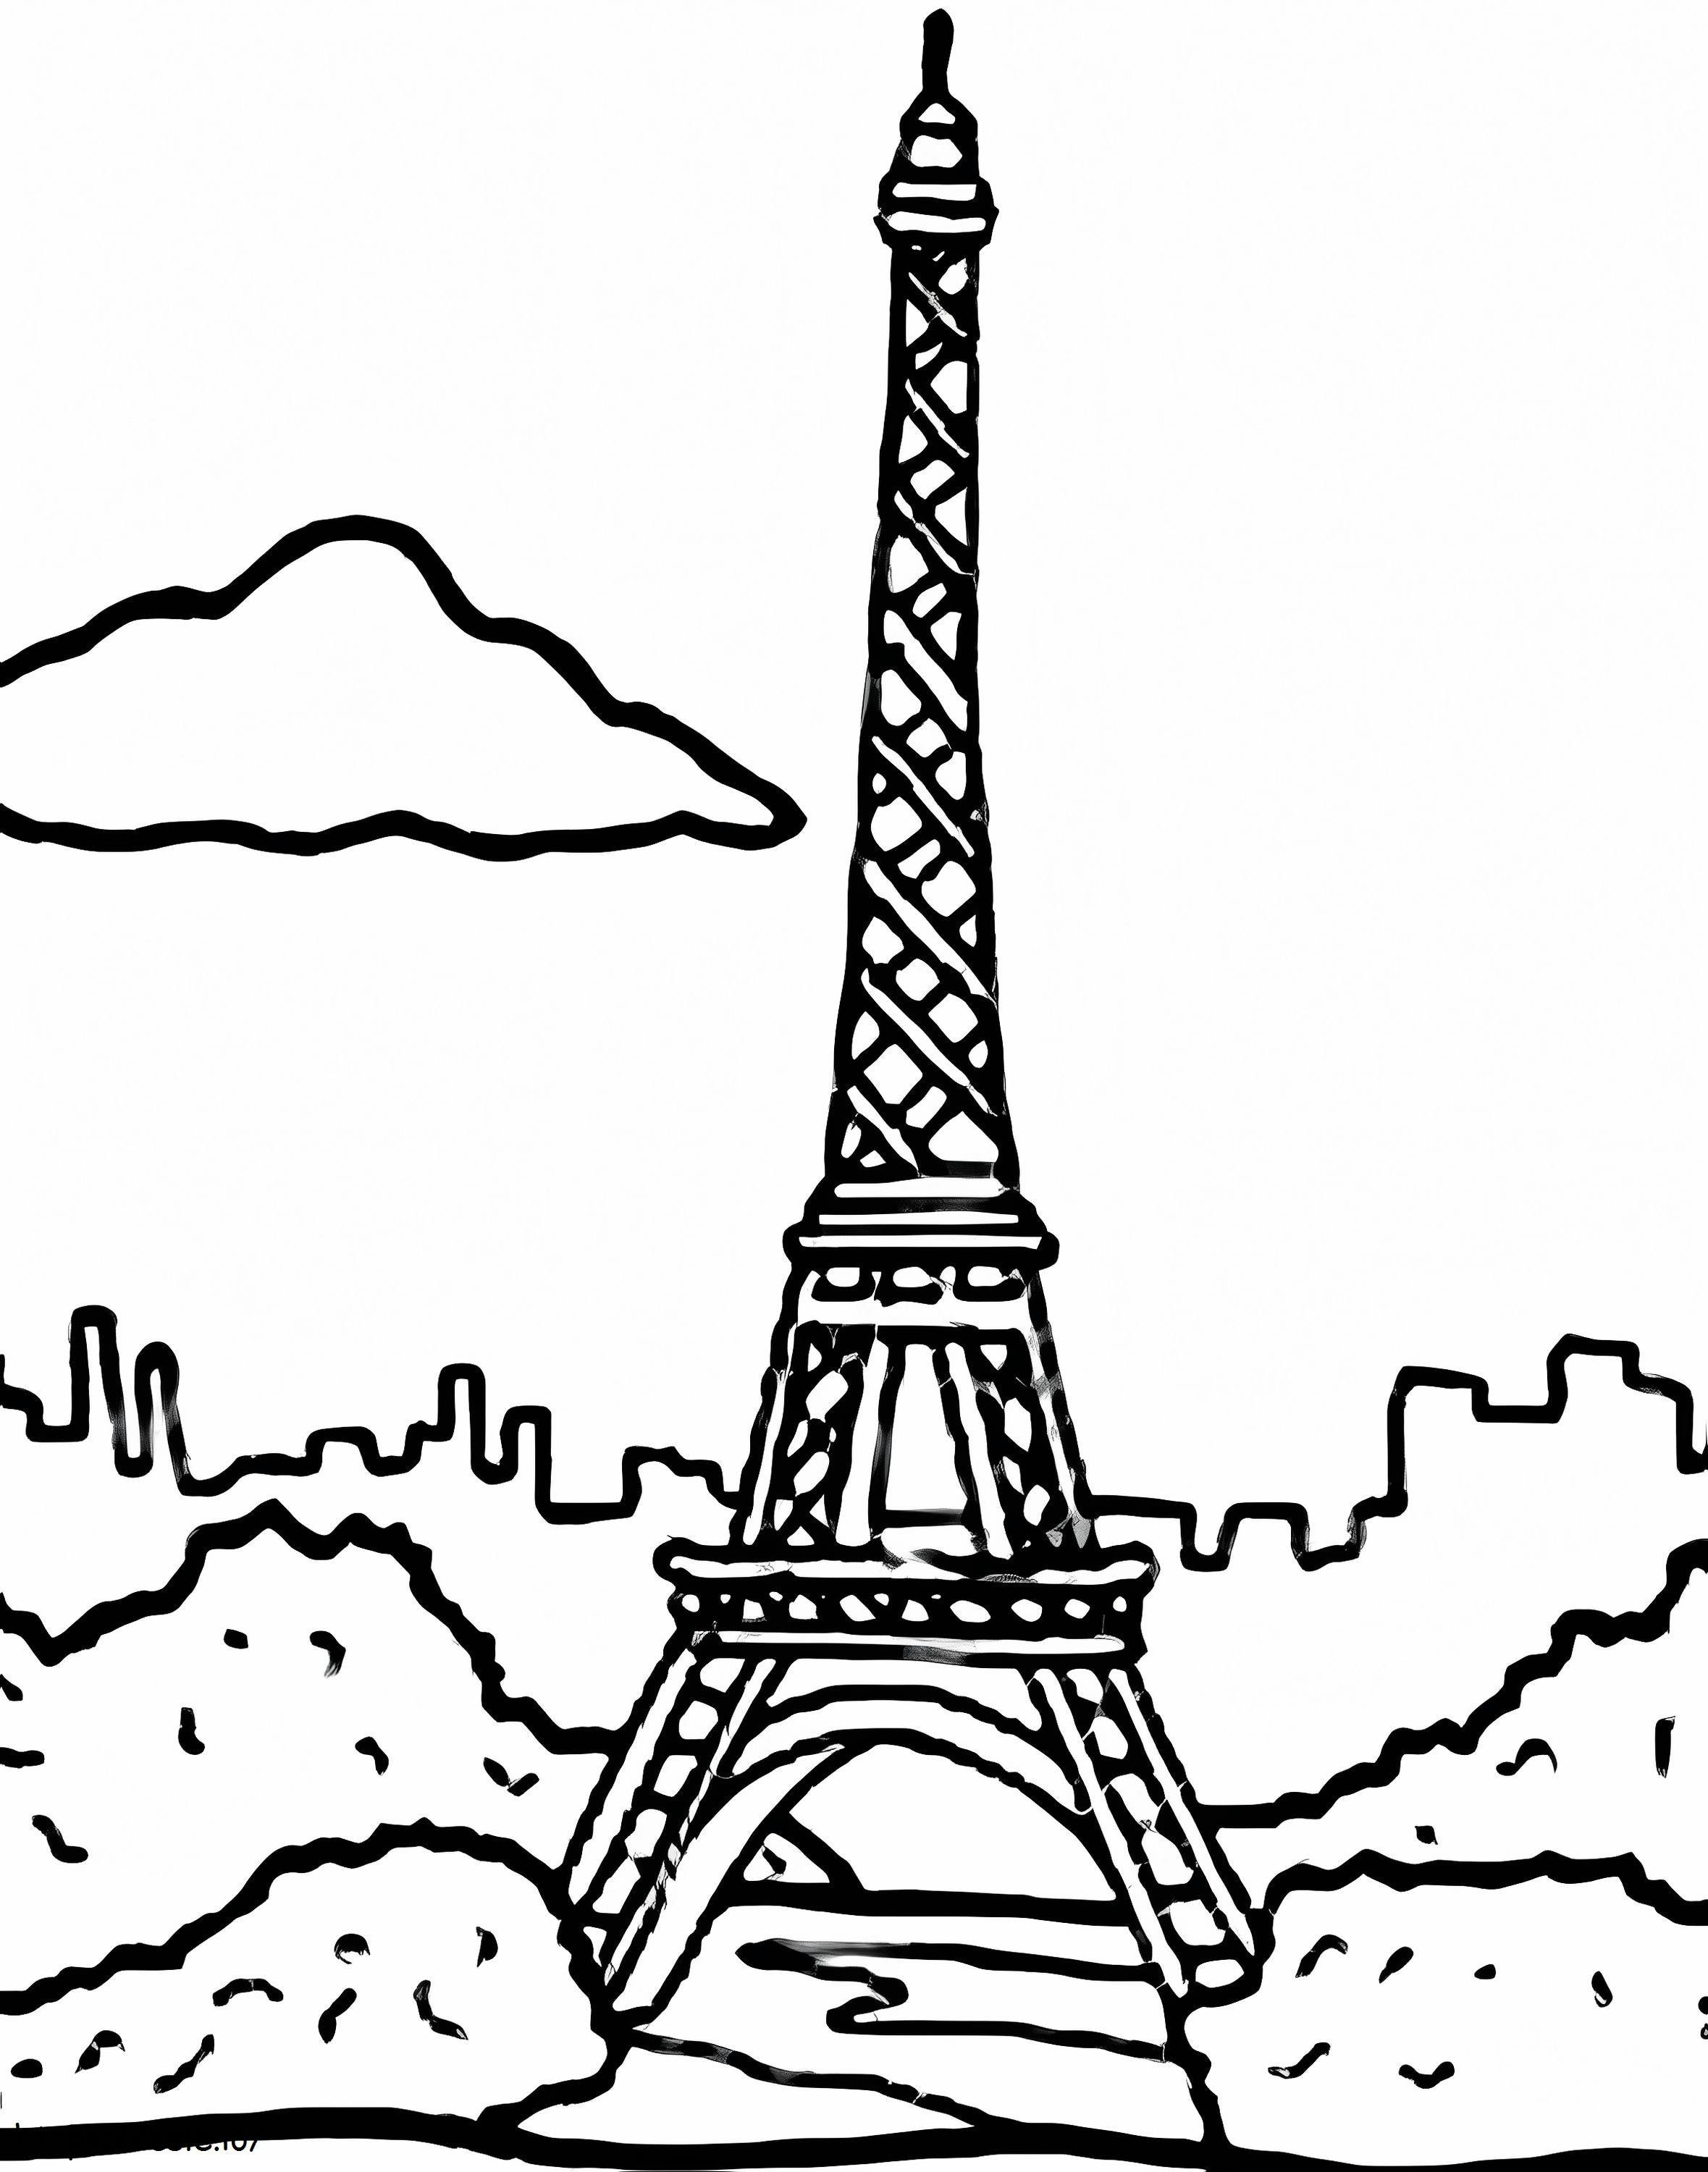 Torre Eiffel 12 da colorare